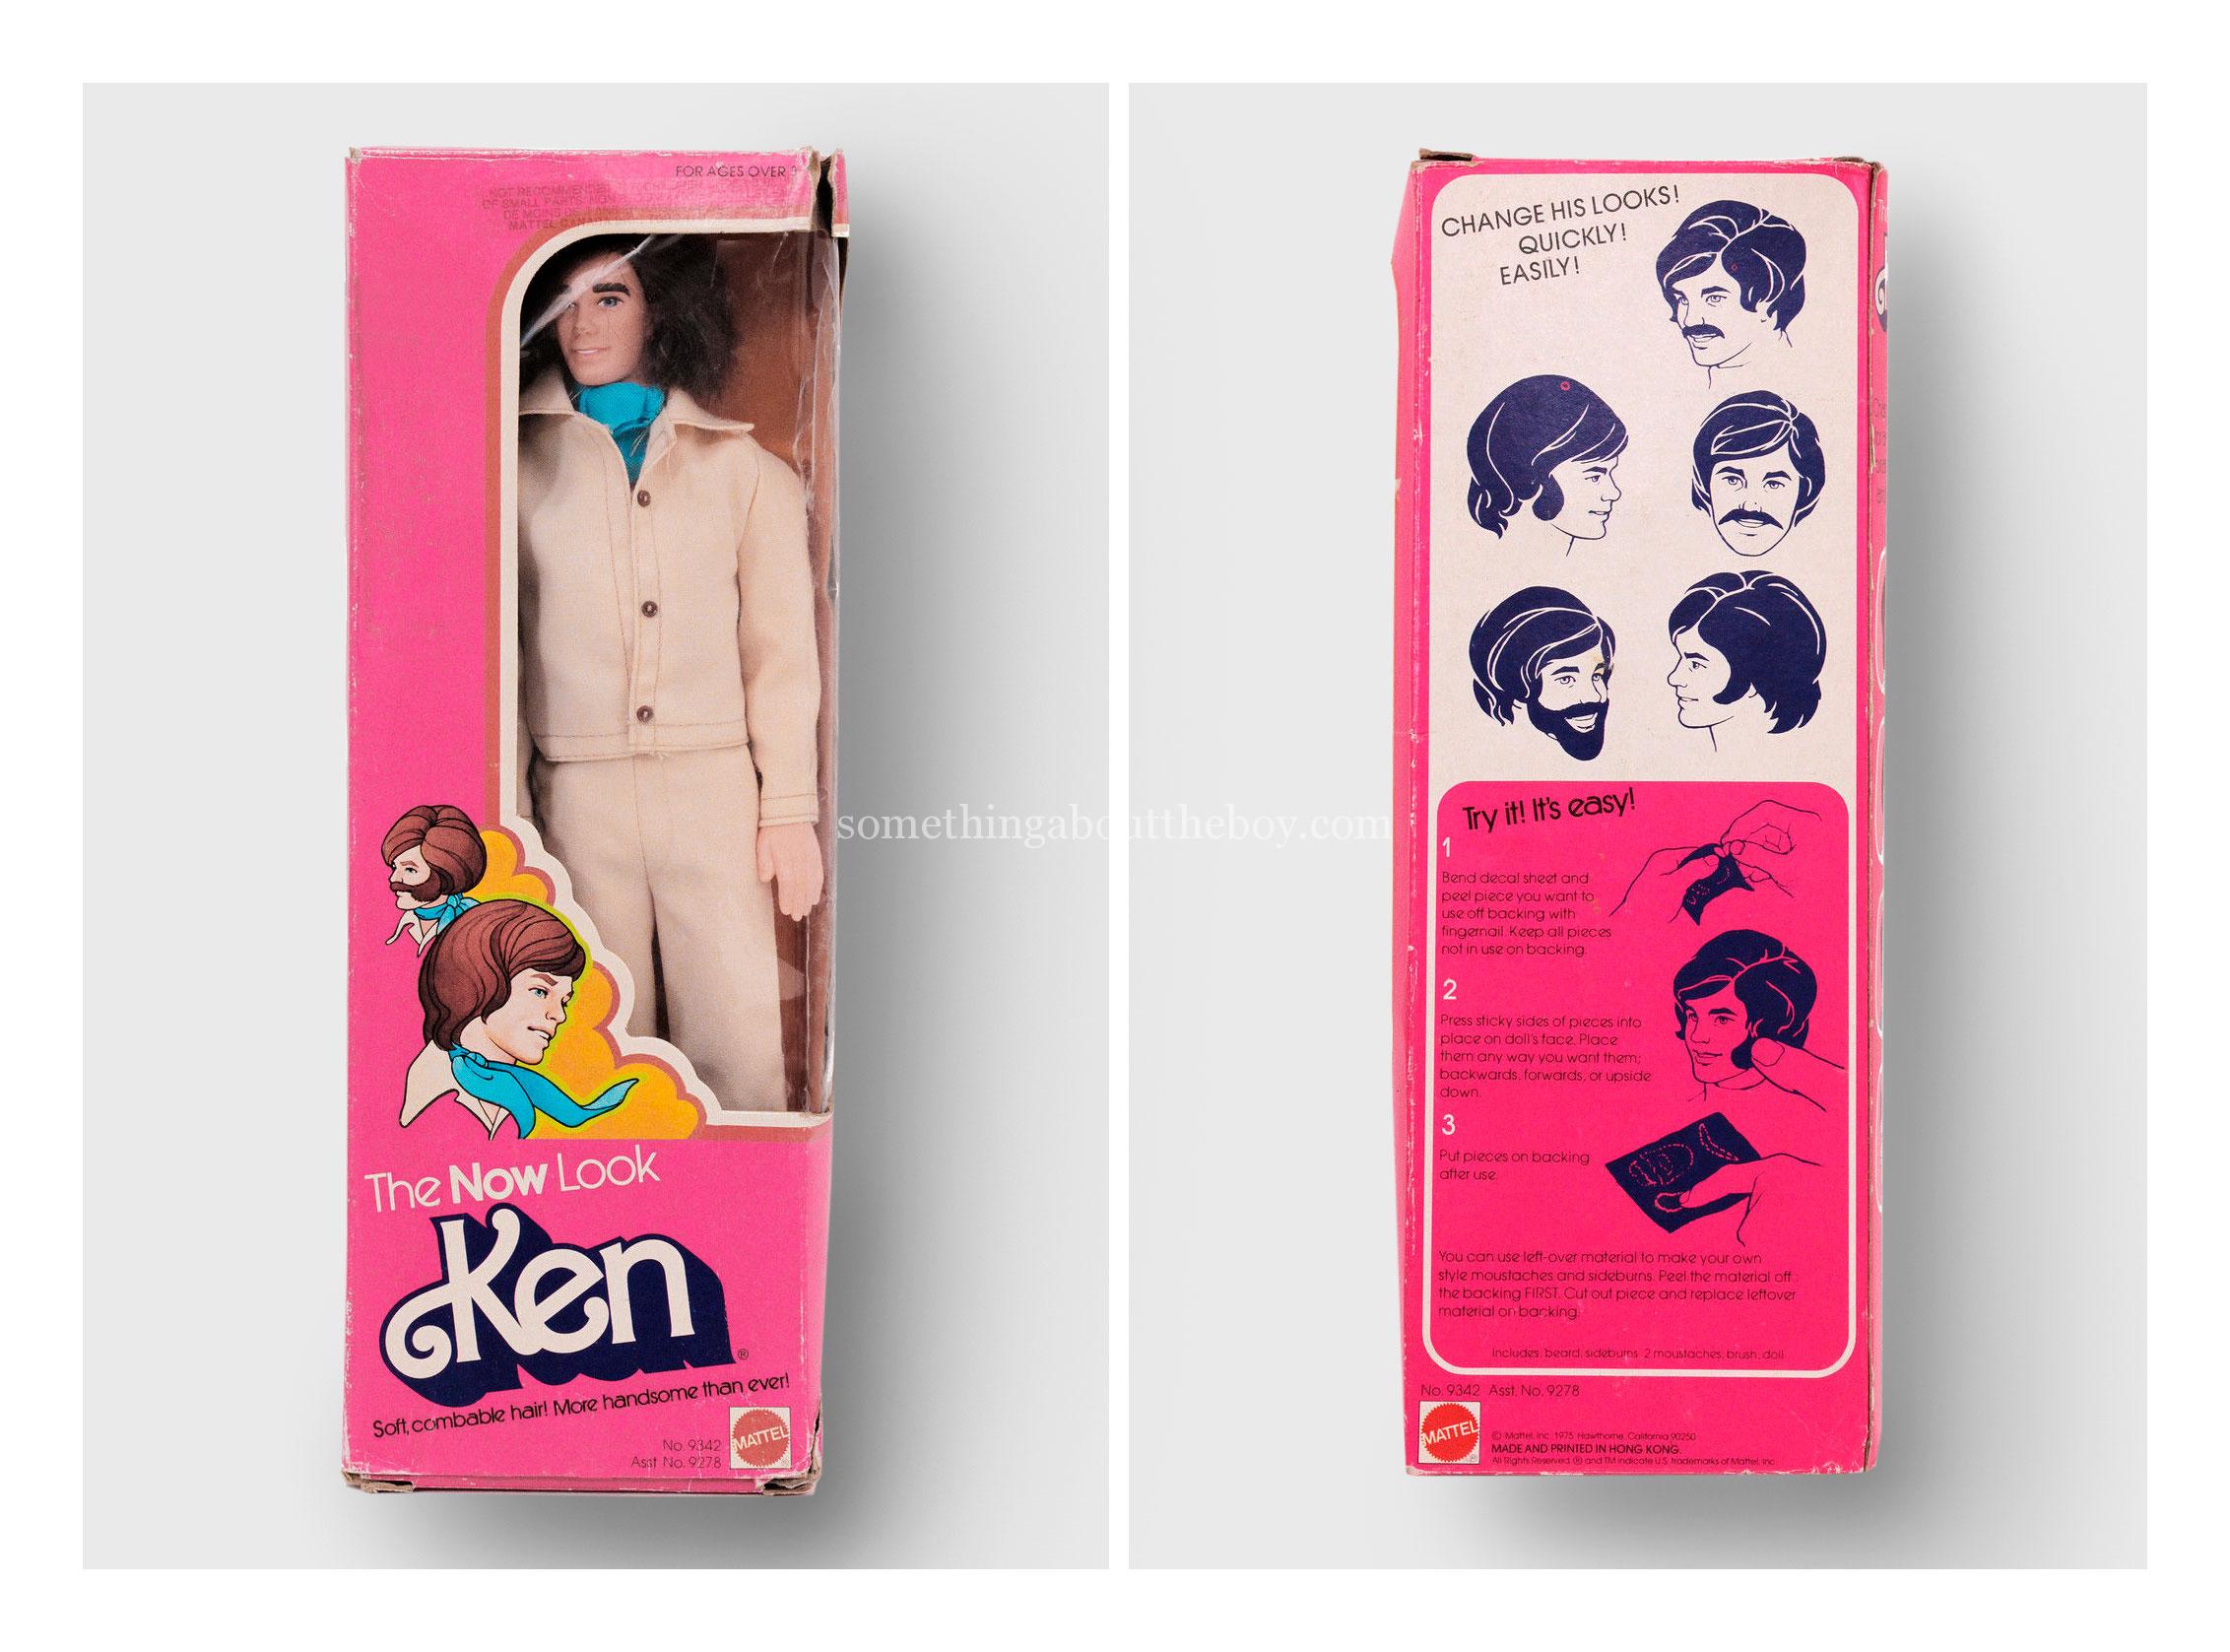 1977 #9342 The Now Look Ken (Canadian version)